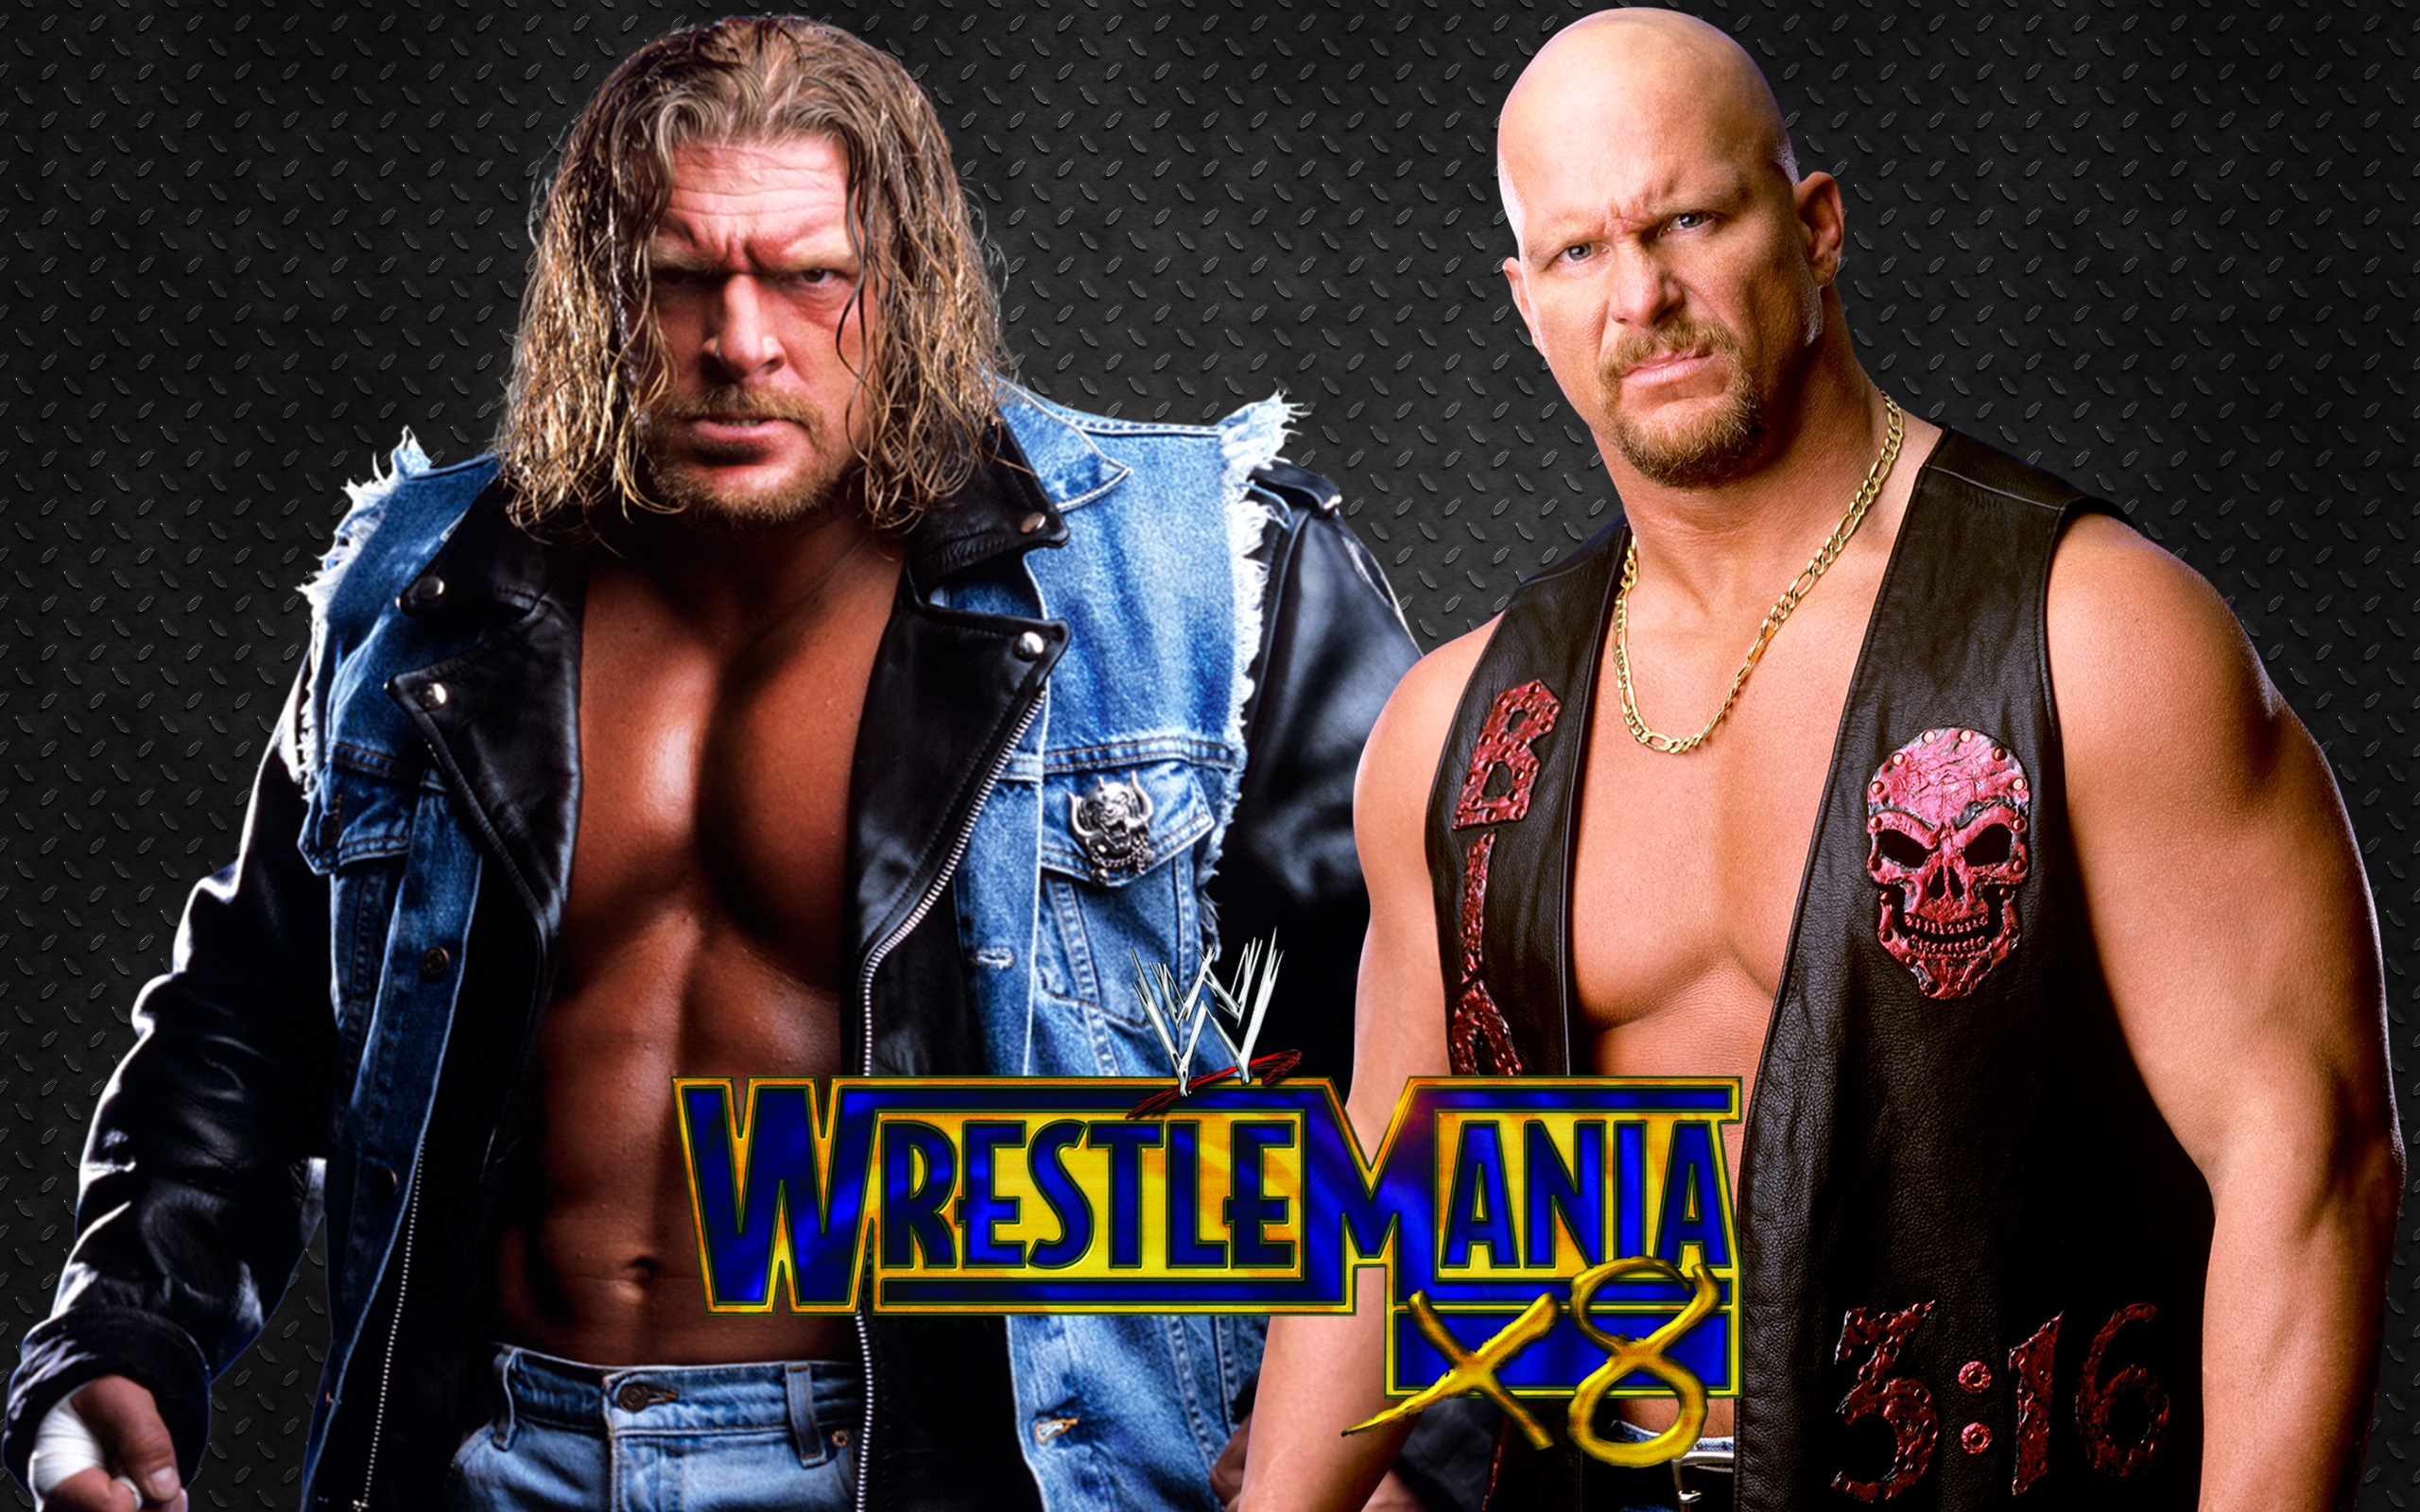 Русские титаны реслинга. WCW реслинг 2001. WWF РЕСТЛМАНИЯ 16. Рестлеры WWE 90х. Рестлеры 2000-х.